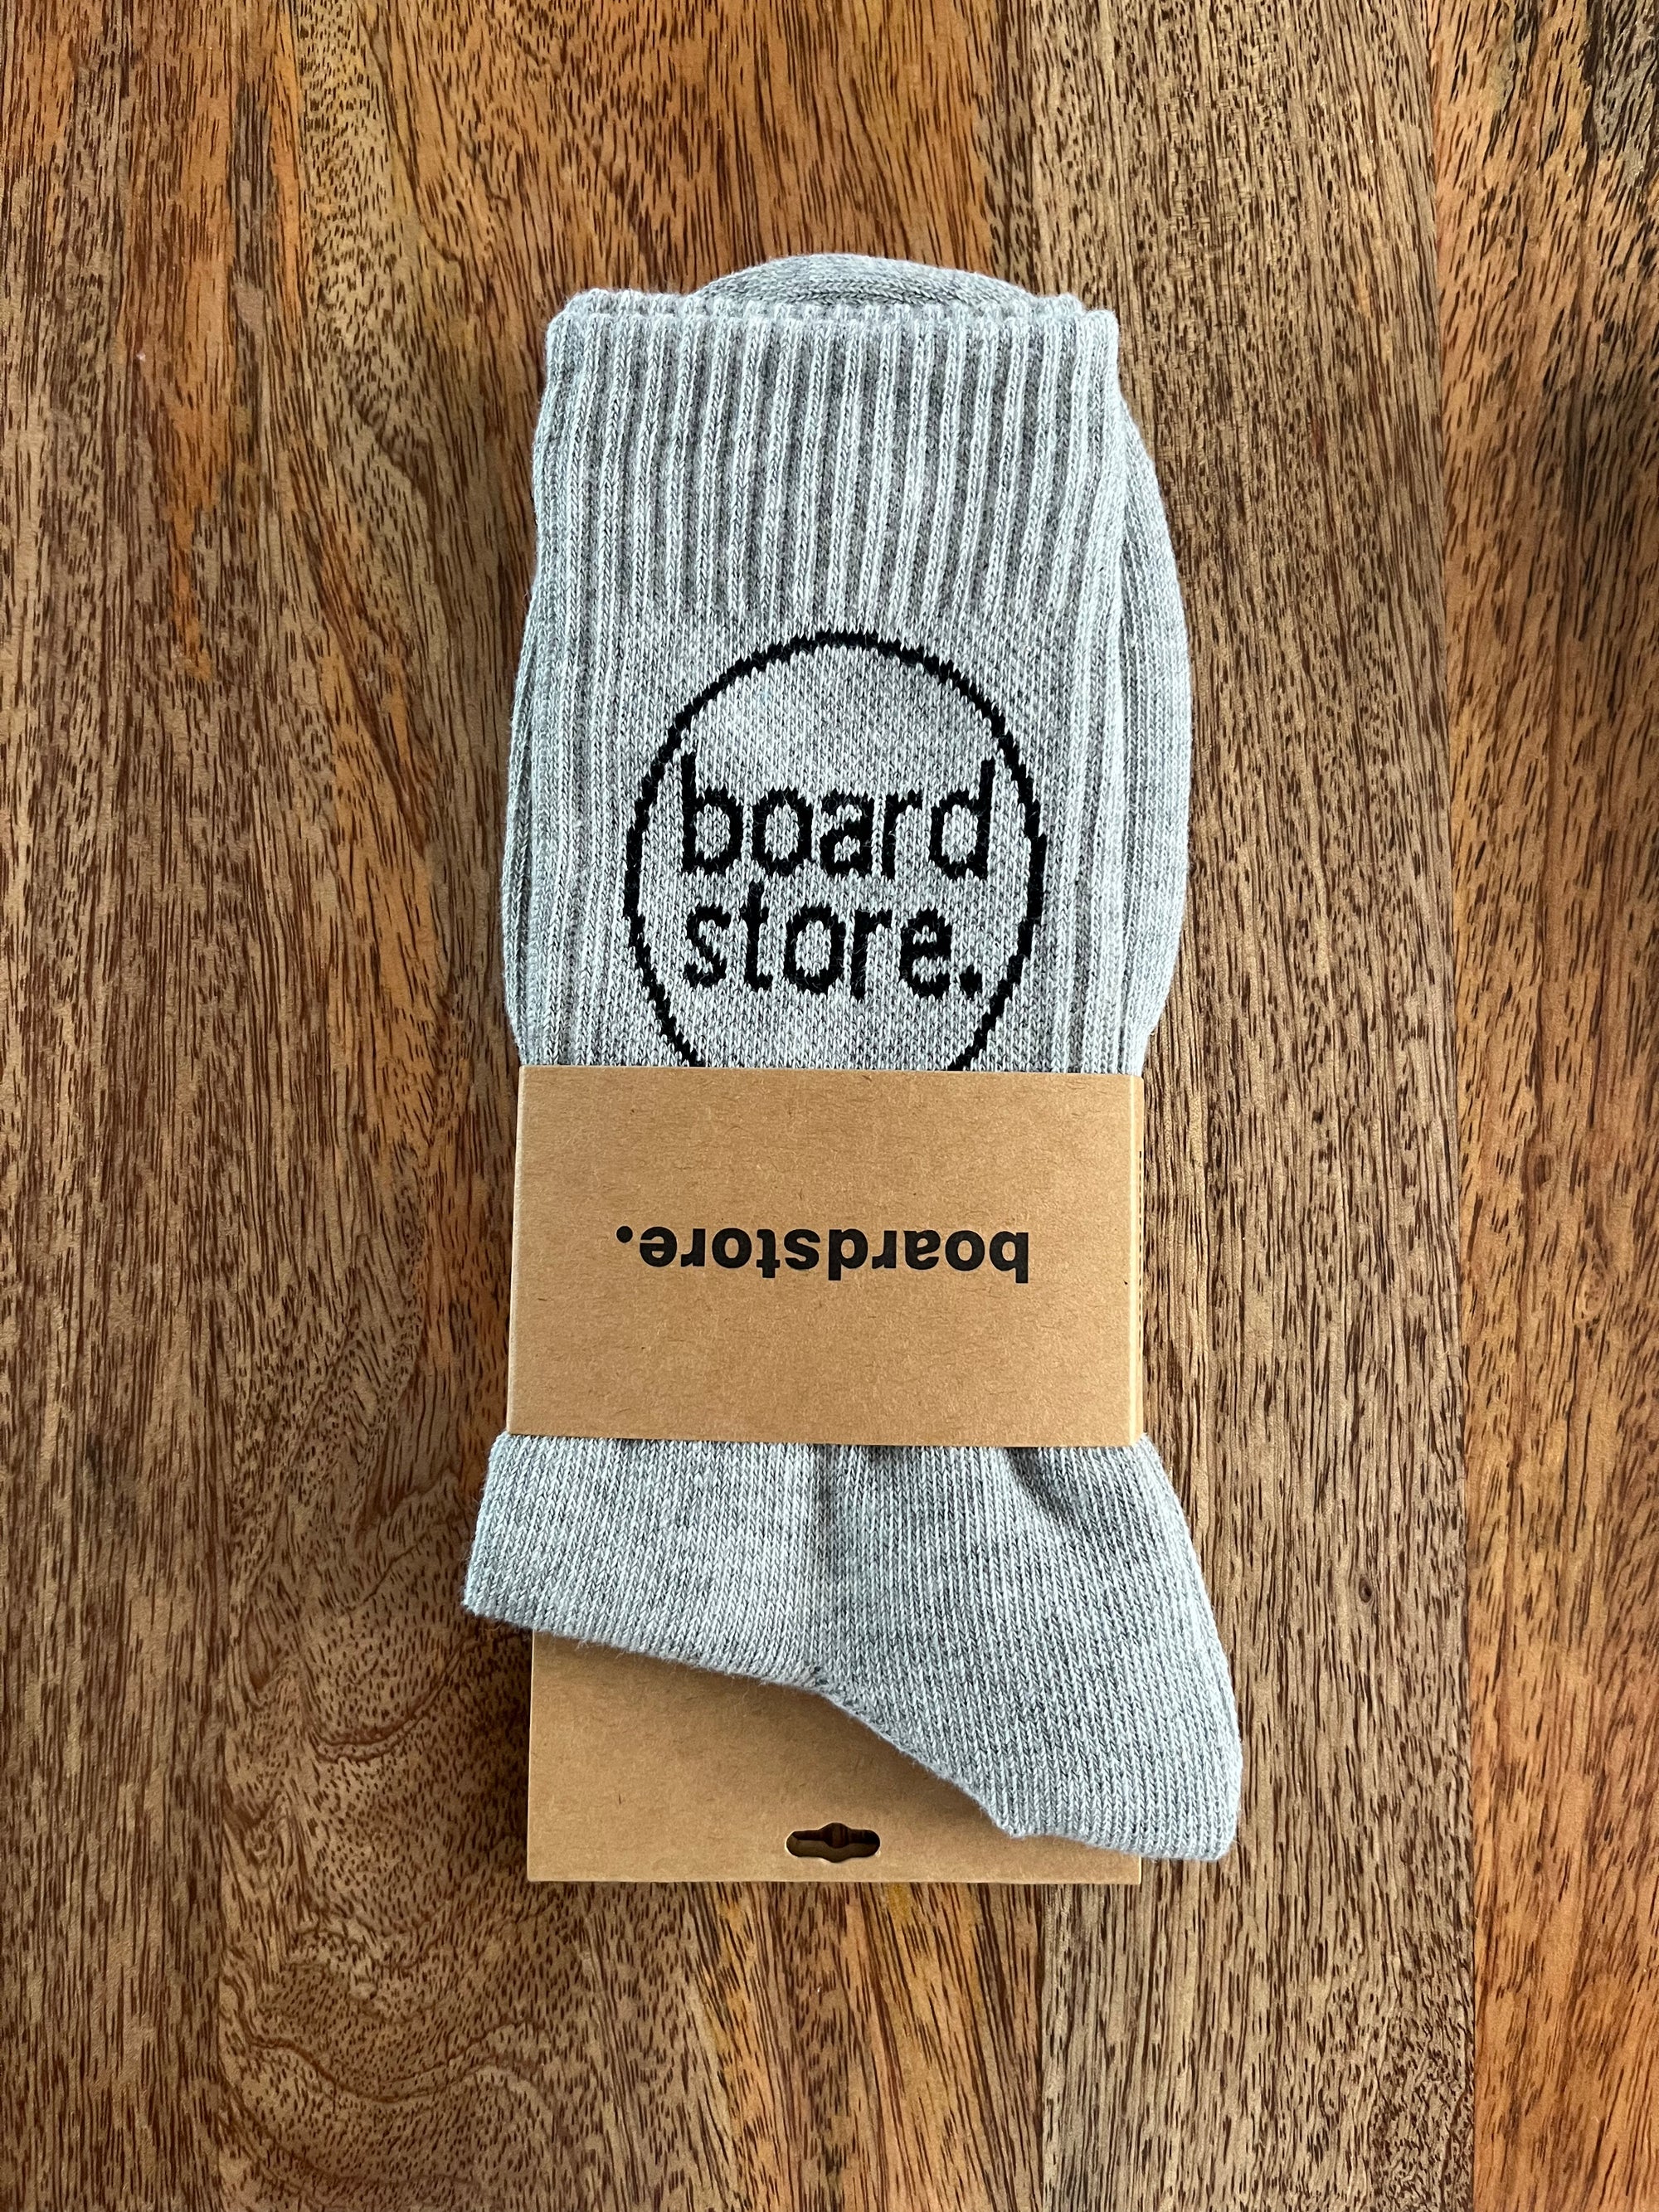 Boardstore Circle Socks - Grey - Board Store Board StoreSocks  